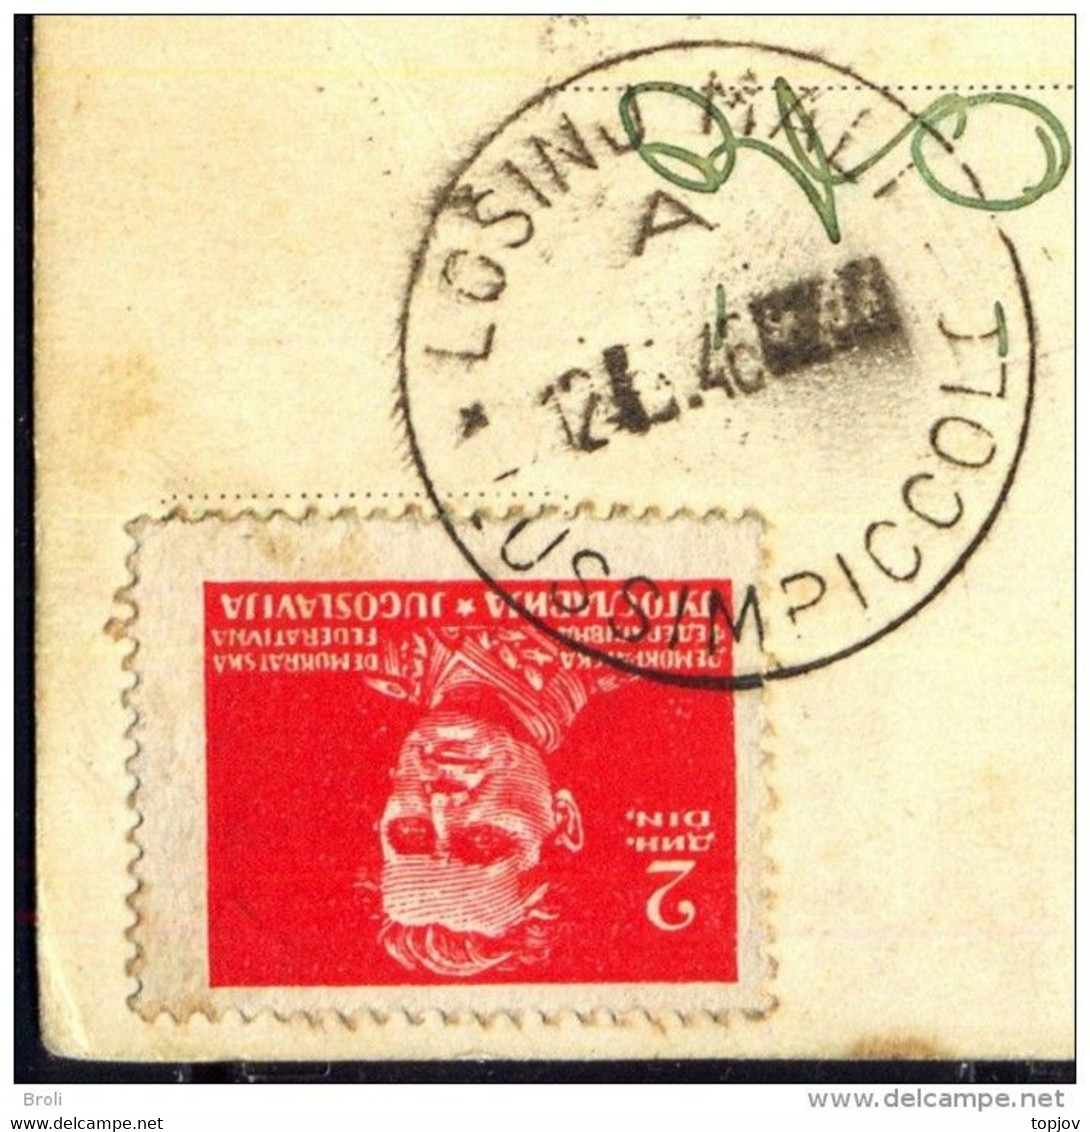 JUGOSLAVIA - ISTRIA - ZONA B - ERROR - Postmark "LOSINJ MALI - LUSSIMPICCOLO" - 1946 - EXTREM RARE - Marcophilie